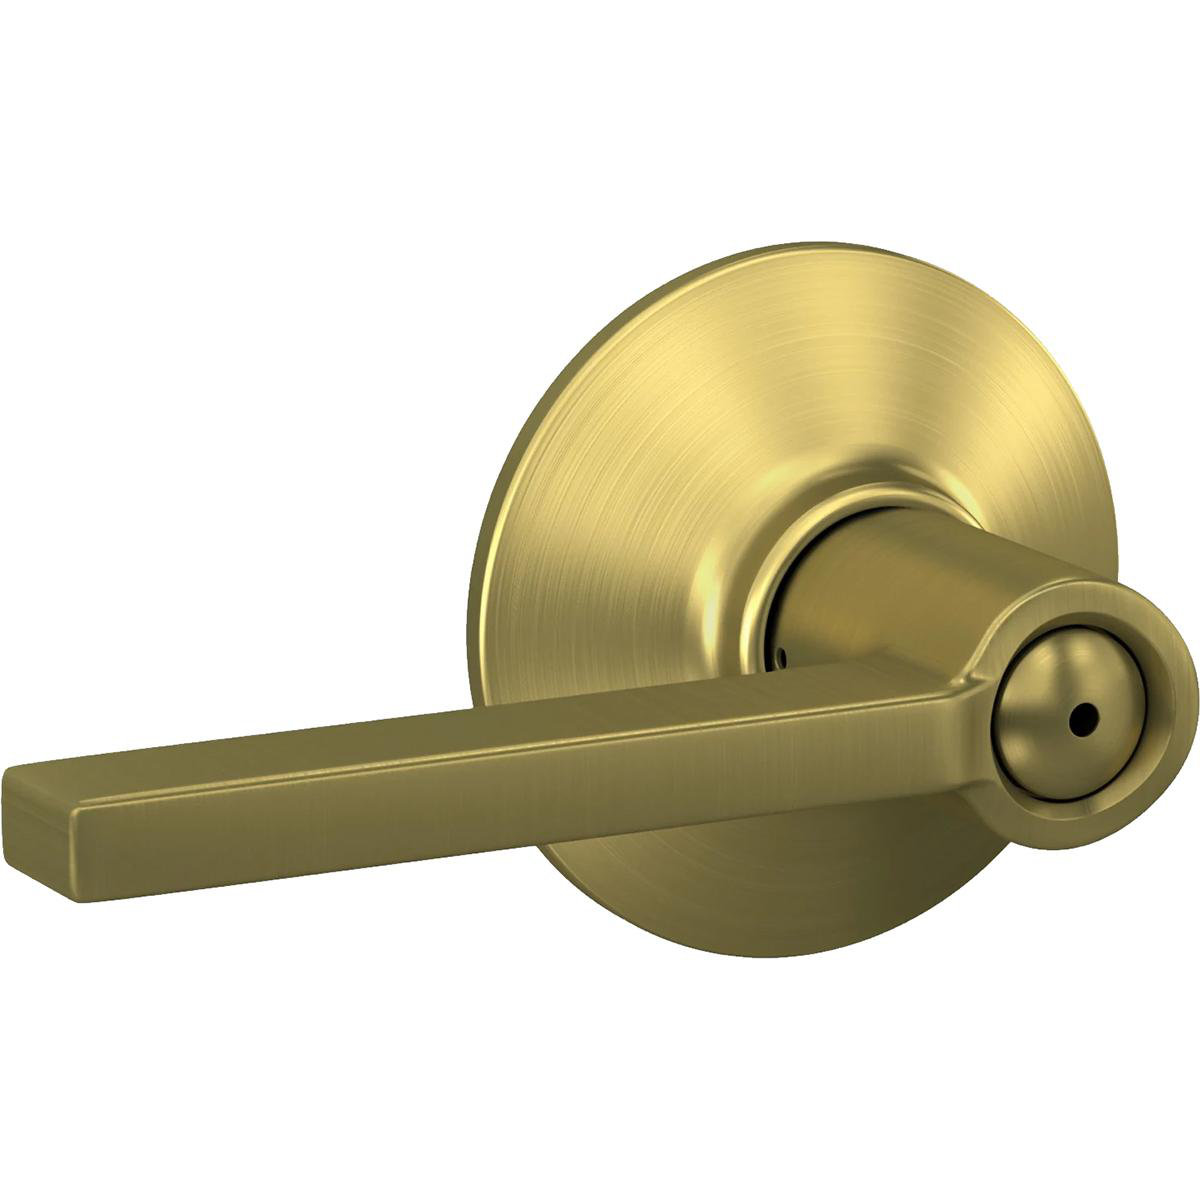 https://assets.wfcdn.com/im/61928346/compr-r85/2558/255804561/satin-brass-door-lever.jpg